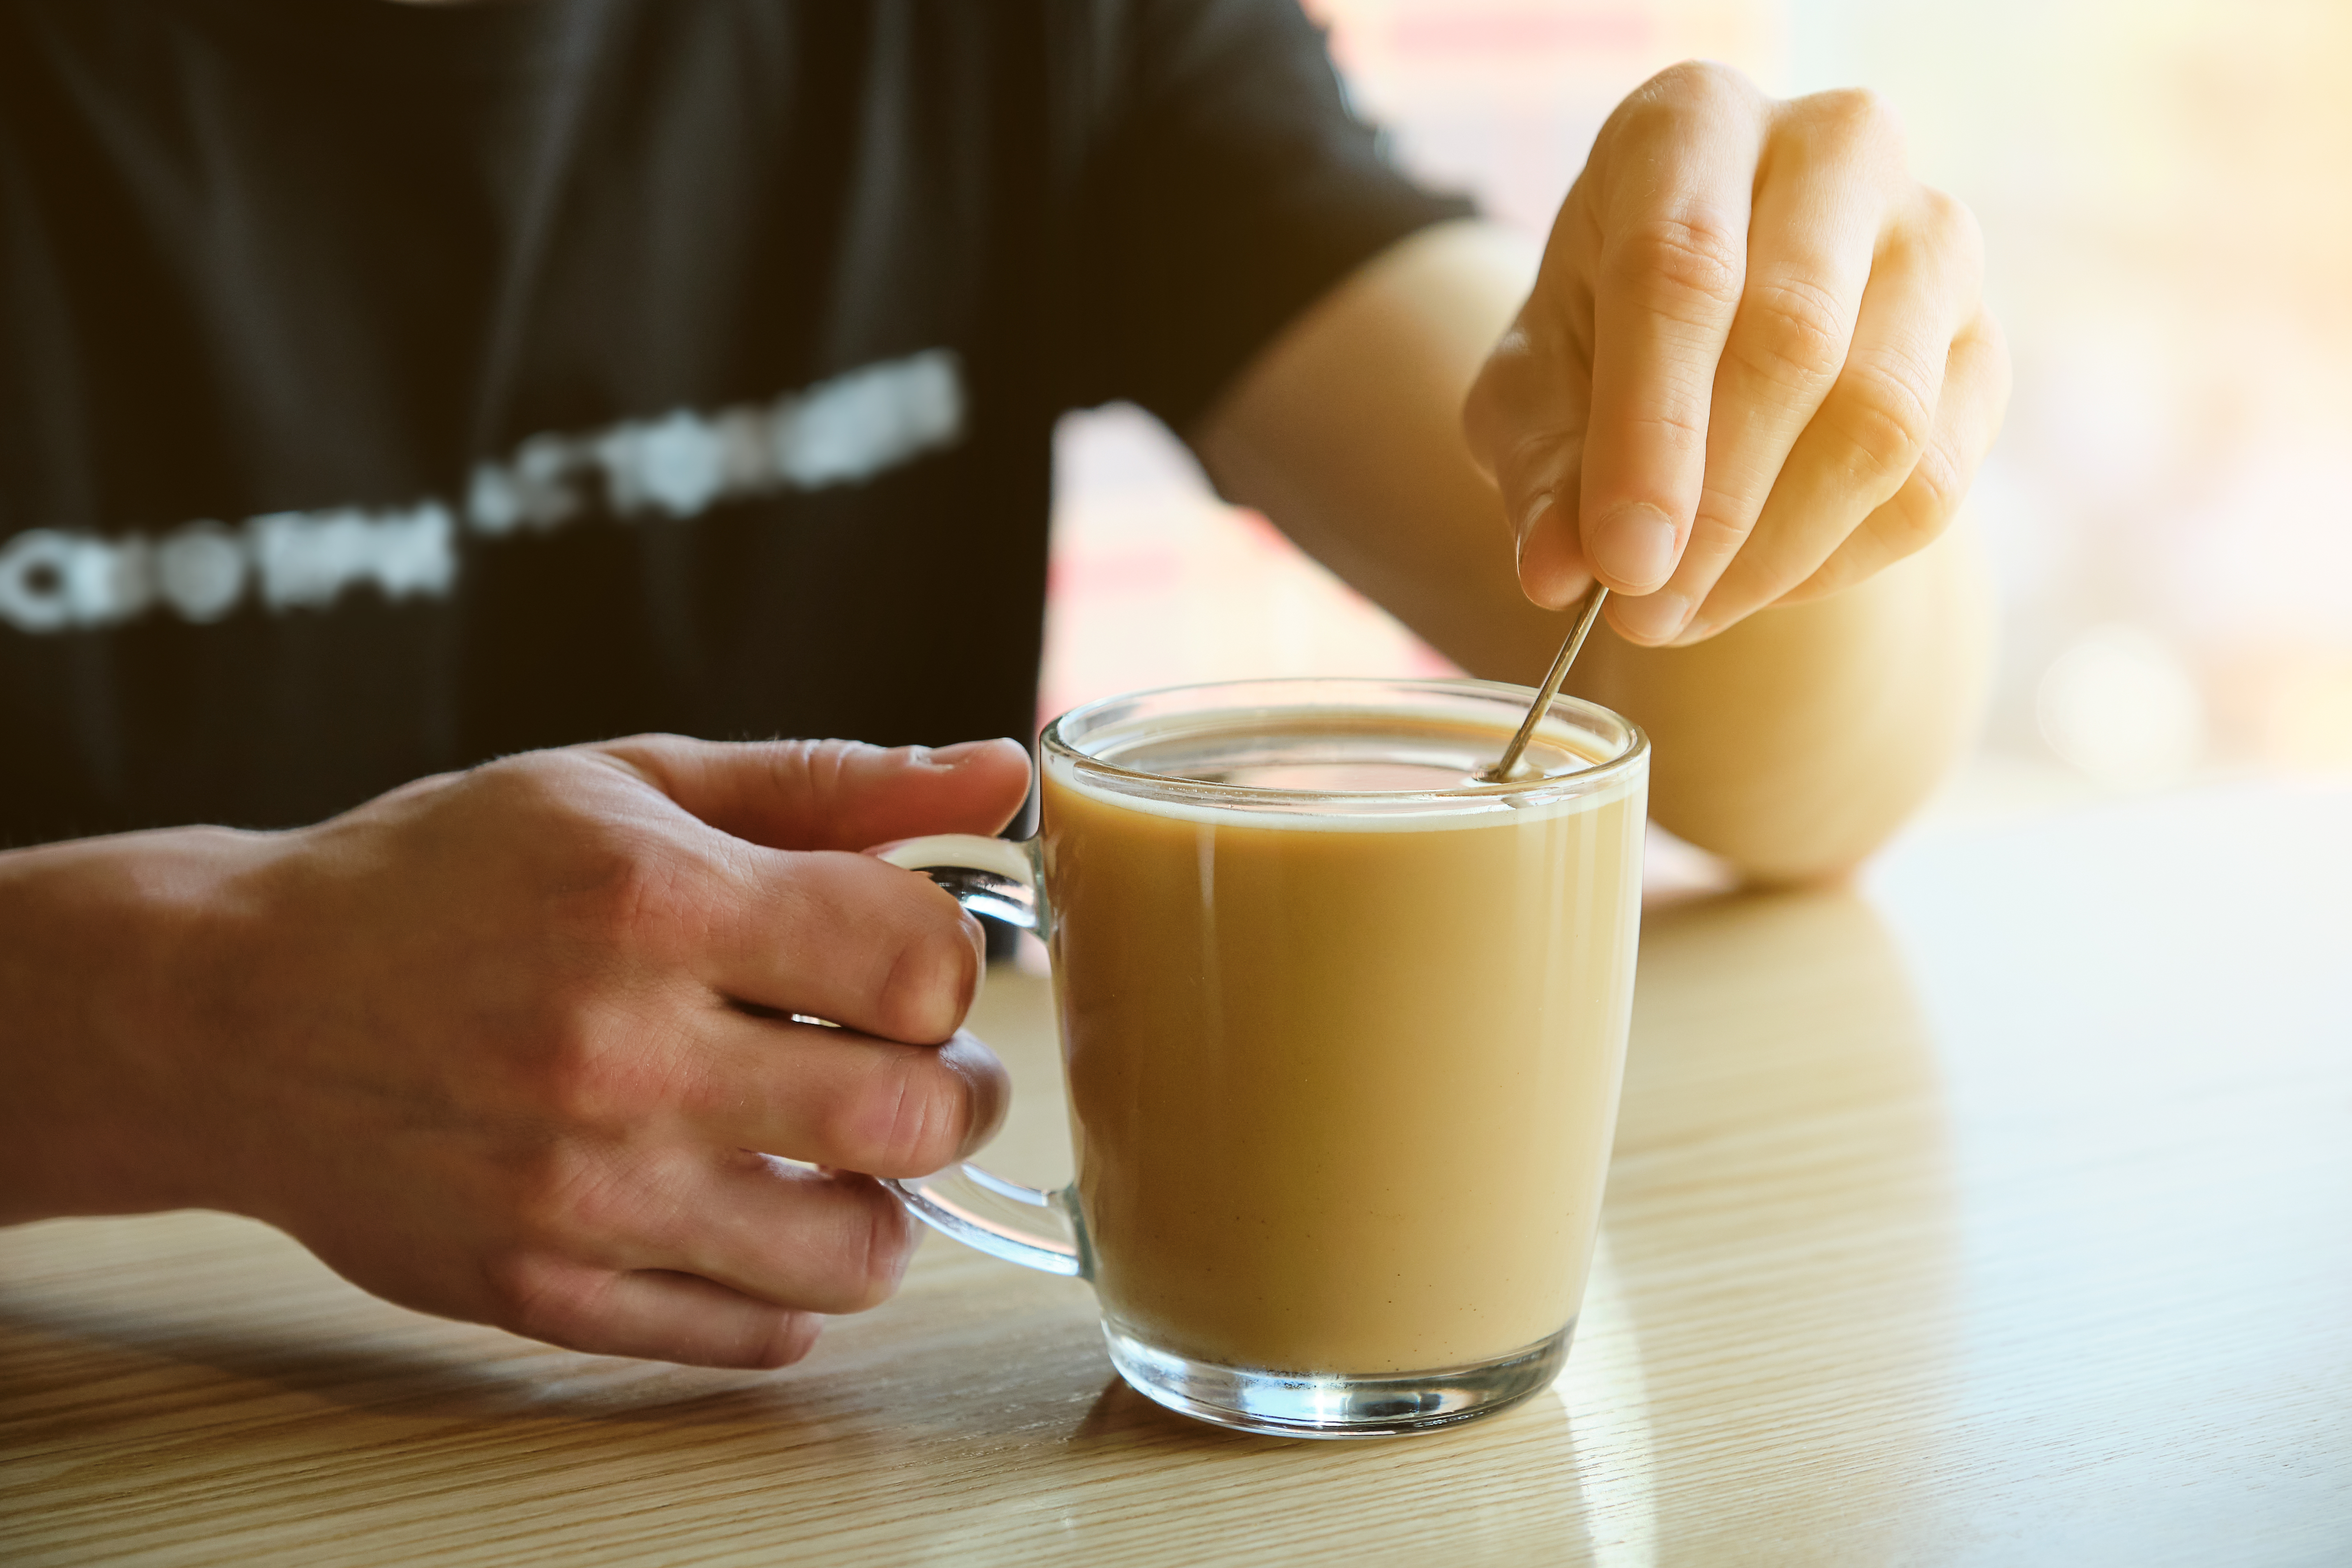 Nehmen Sie weniger Zucker in Ihren Kaffee oder Tee